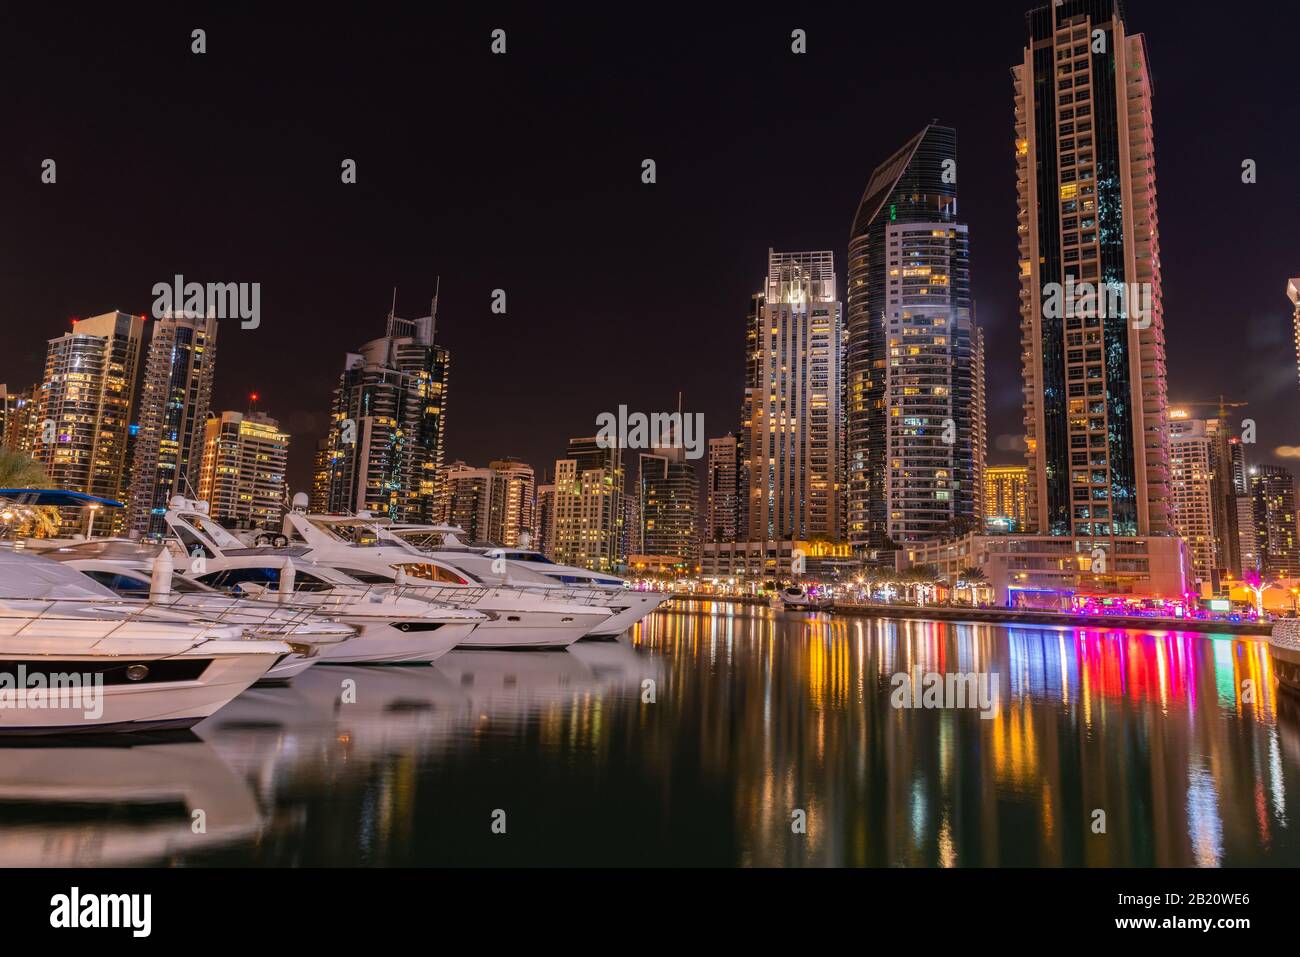 Yachts docked at Dubai Marina in Dubai UAE. Stock Photo